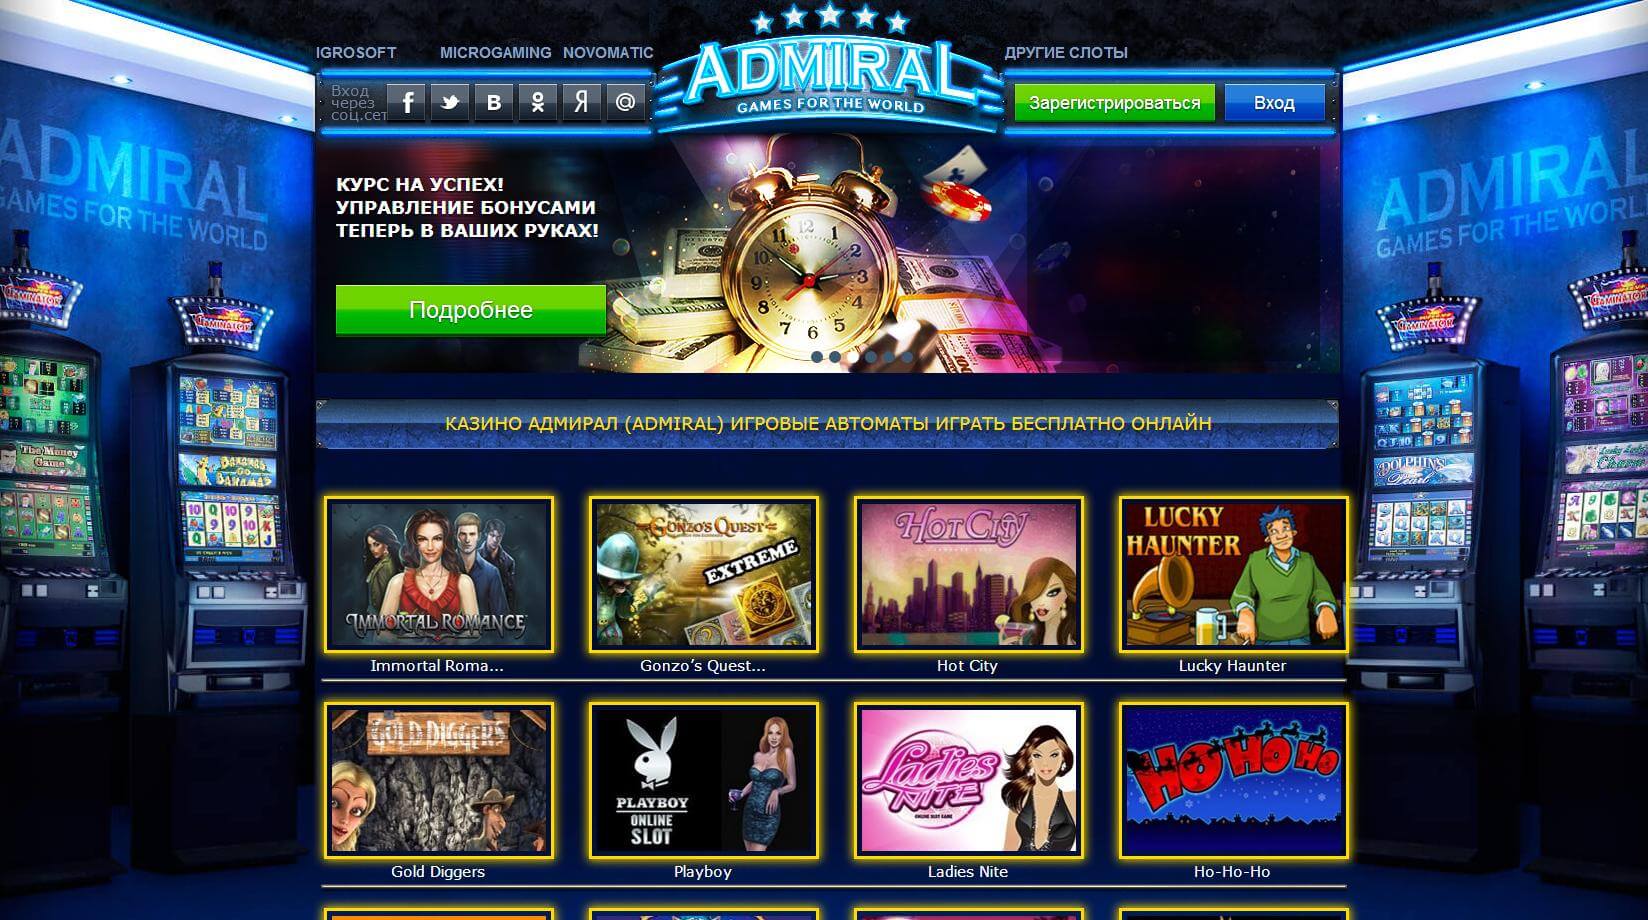 Admiral онлайн казино joycasino com зеркало россия деп visa